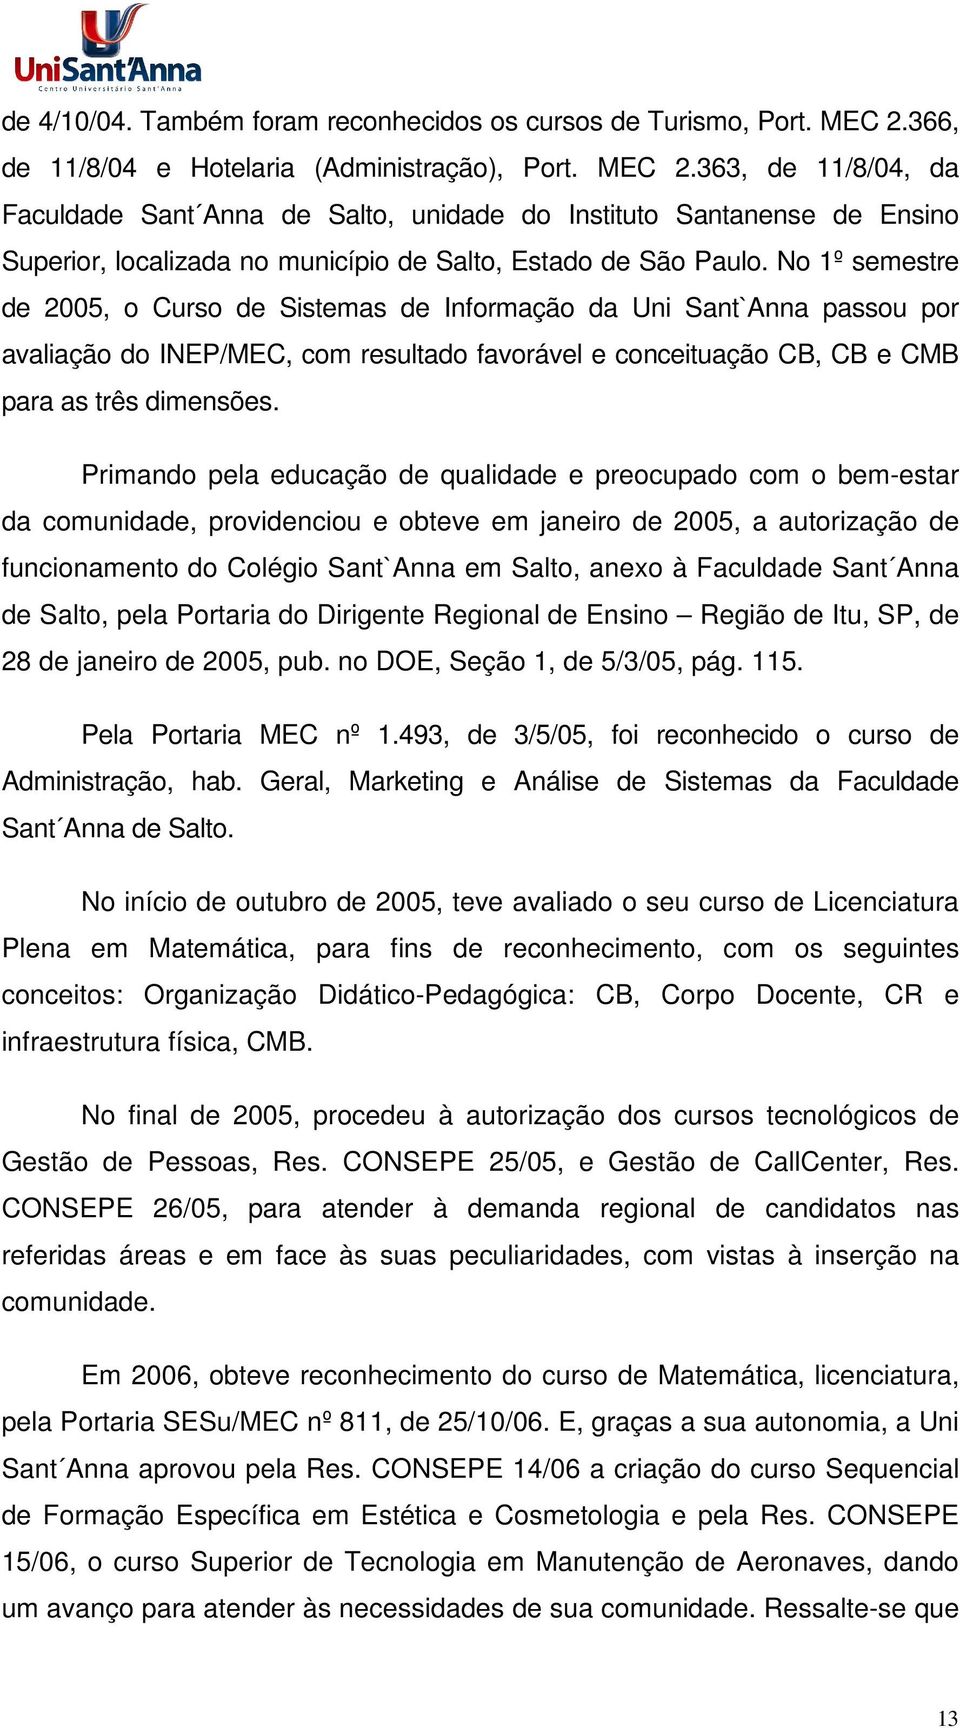 363, de 11/8/04, da Faculdade Sant Anna de Salto, unidade do Instituto Santanense de Ensino Superior, localizada no município de Salto, Estado de São Paulo.